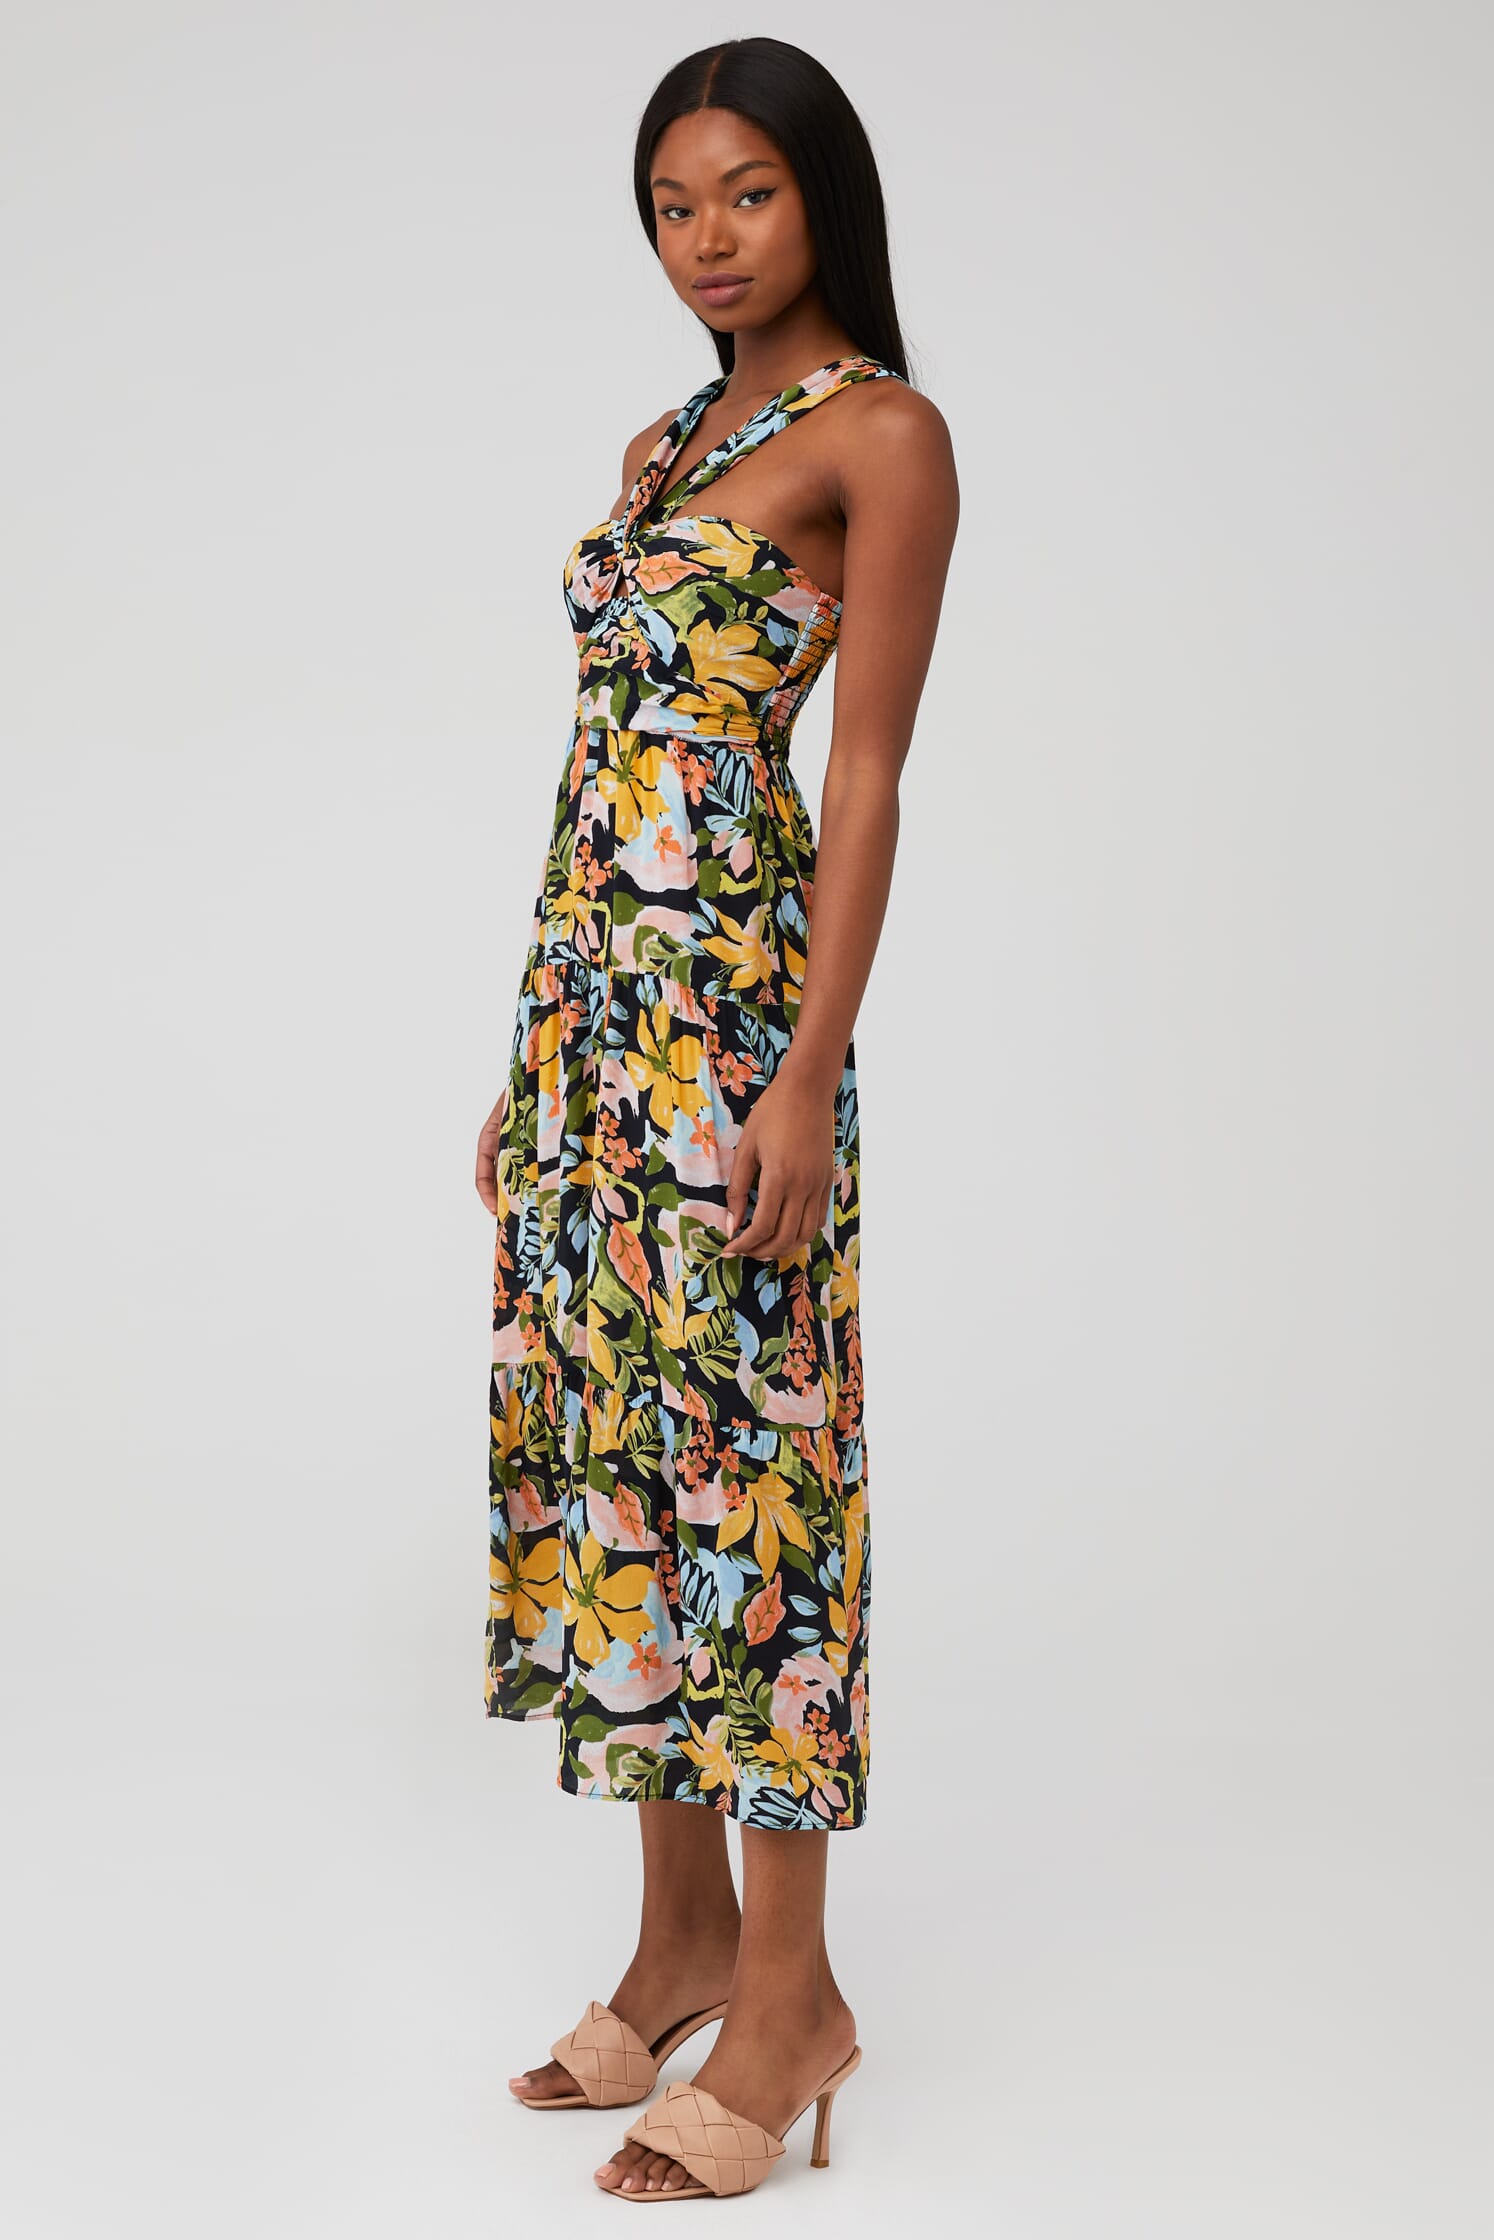 Saylor | Starlee Dress in Multi| FashionPass